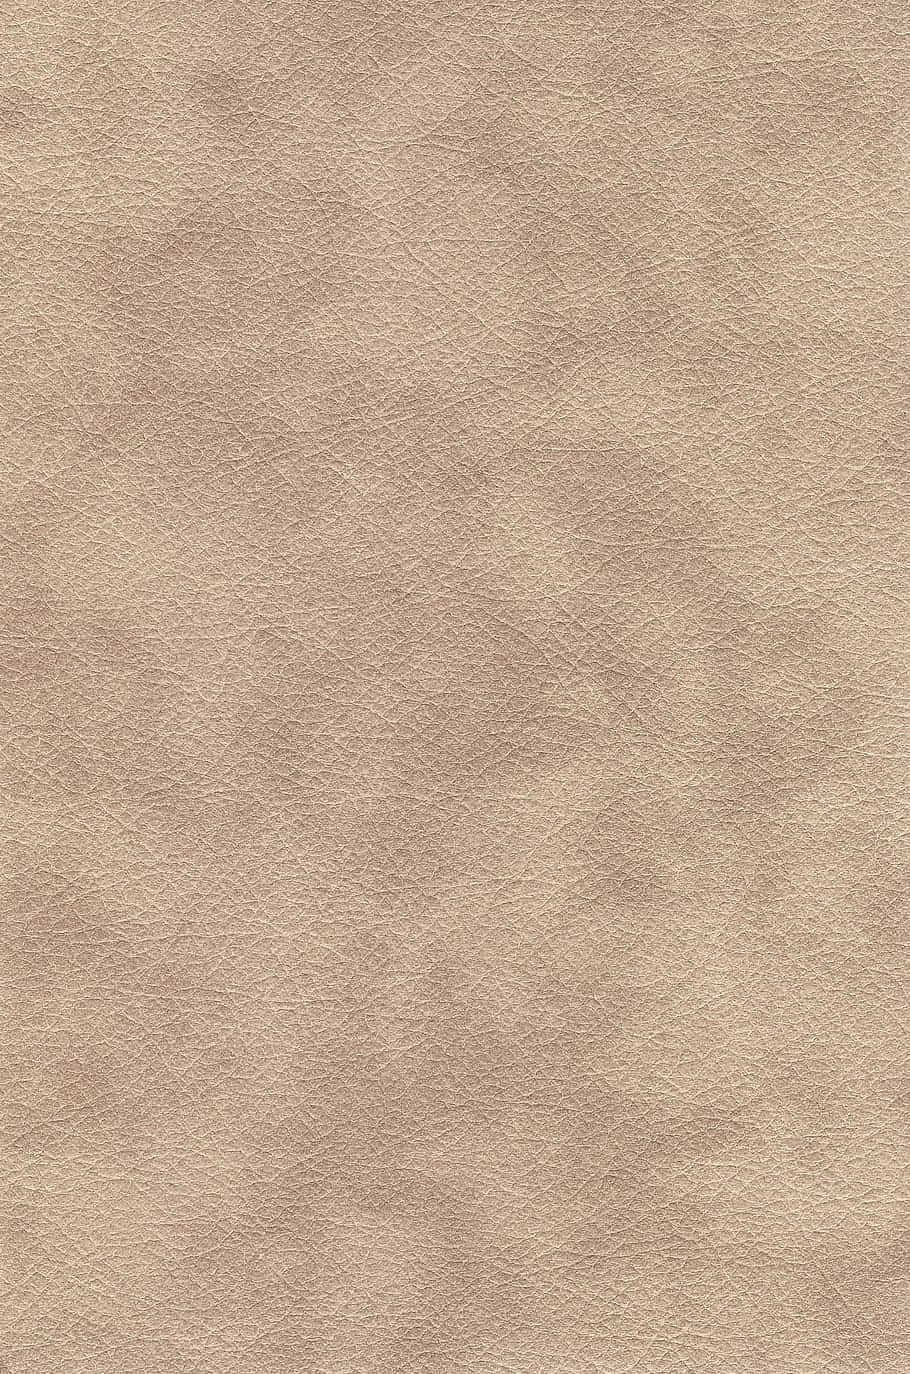 Plush Carpet Texture In Subtle Hue Wallpaper